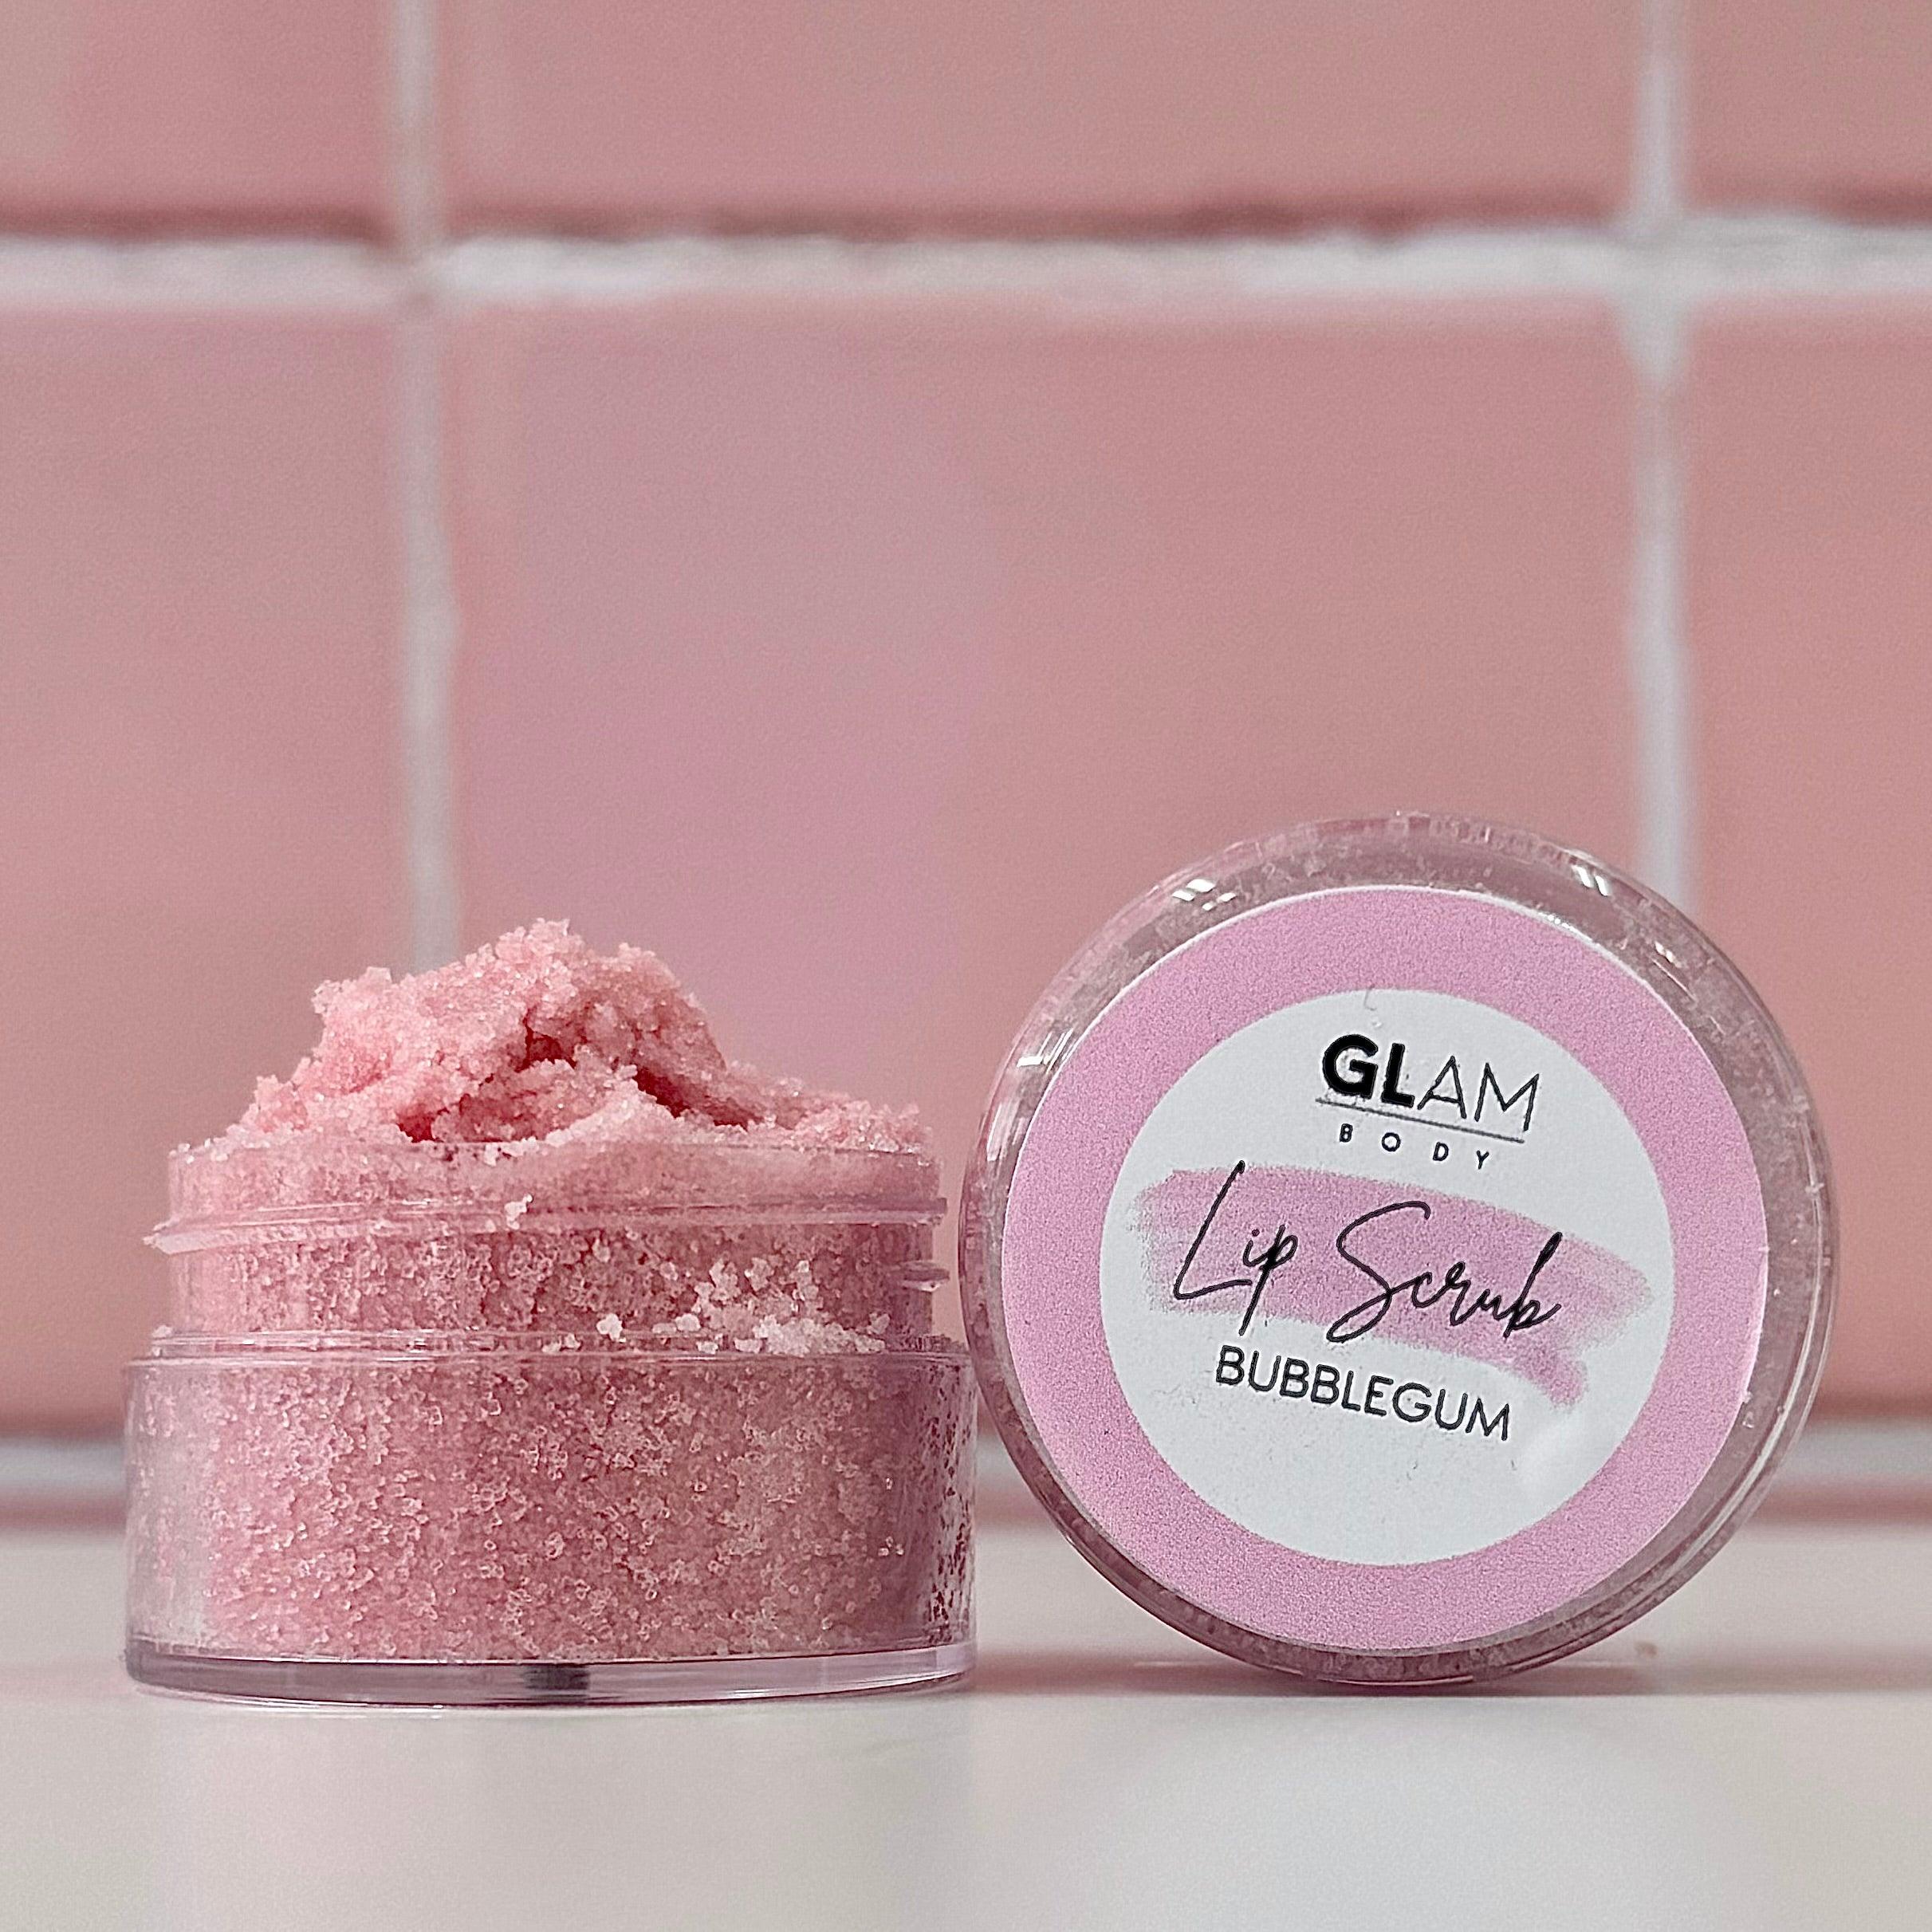 Bubblegum Lip Scrub - Glam Body